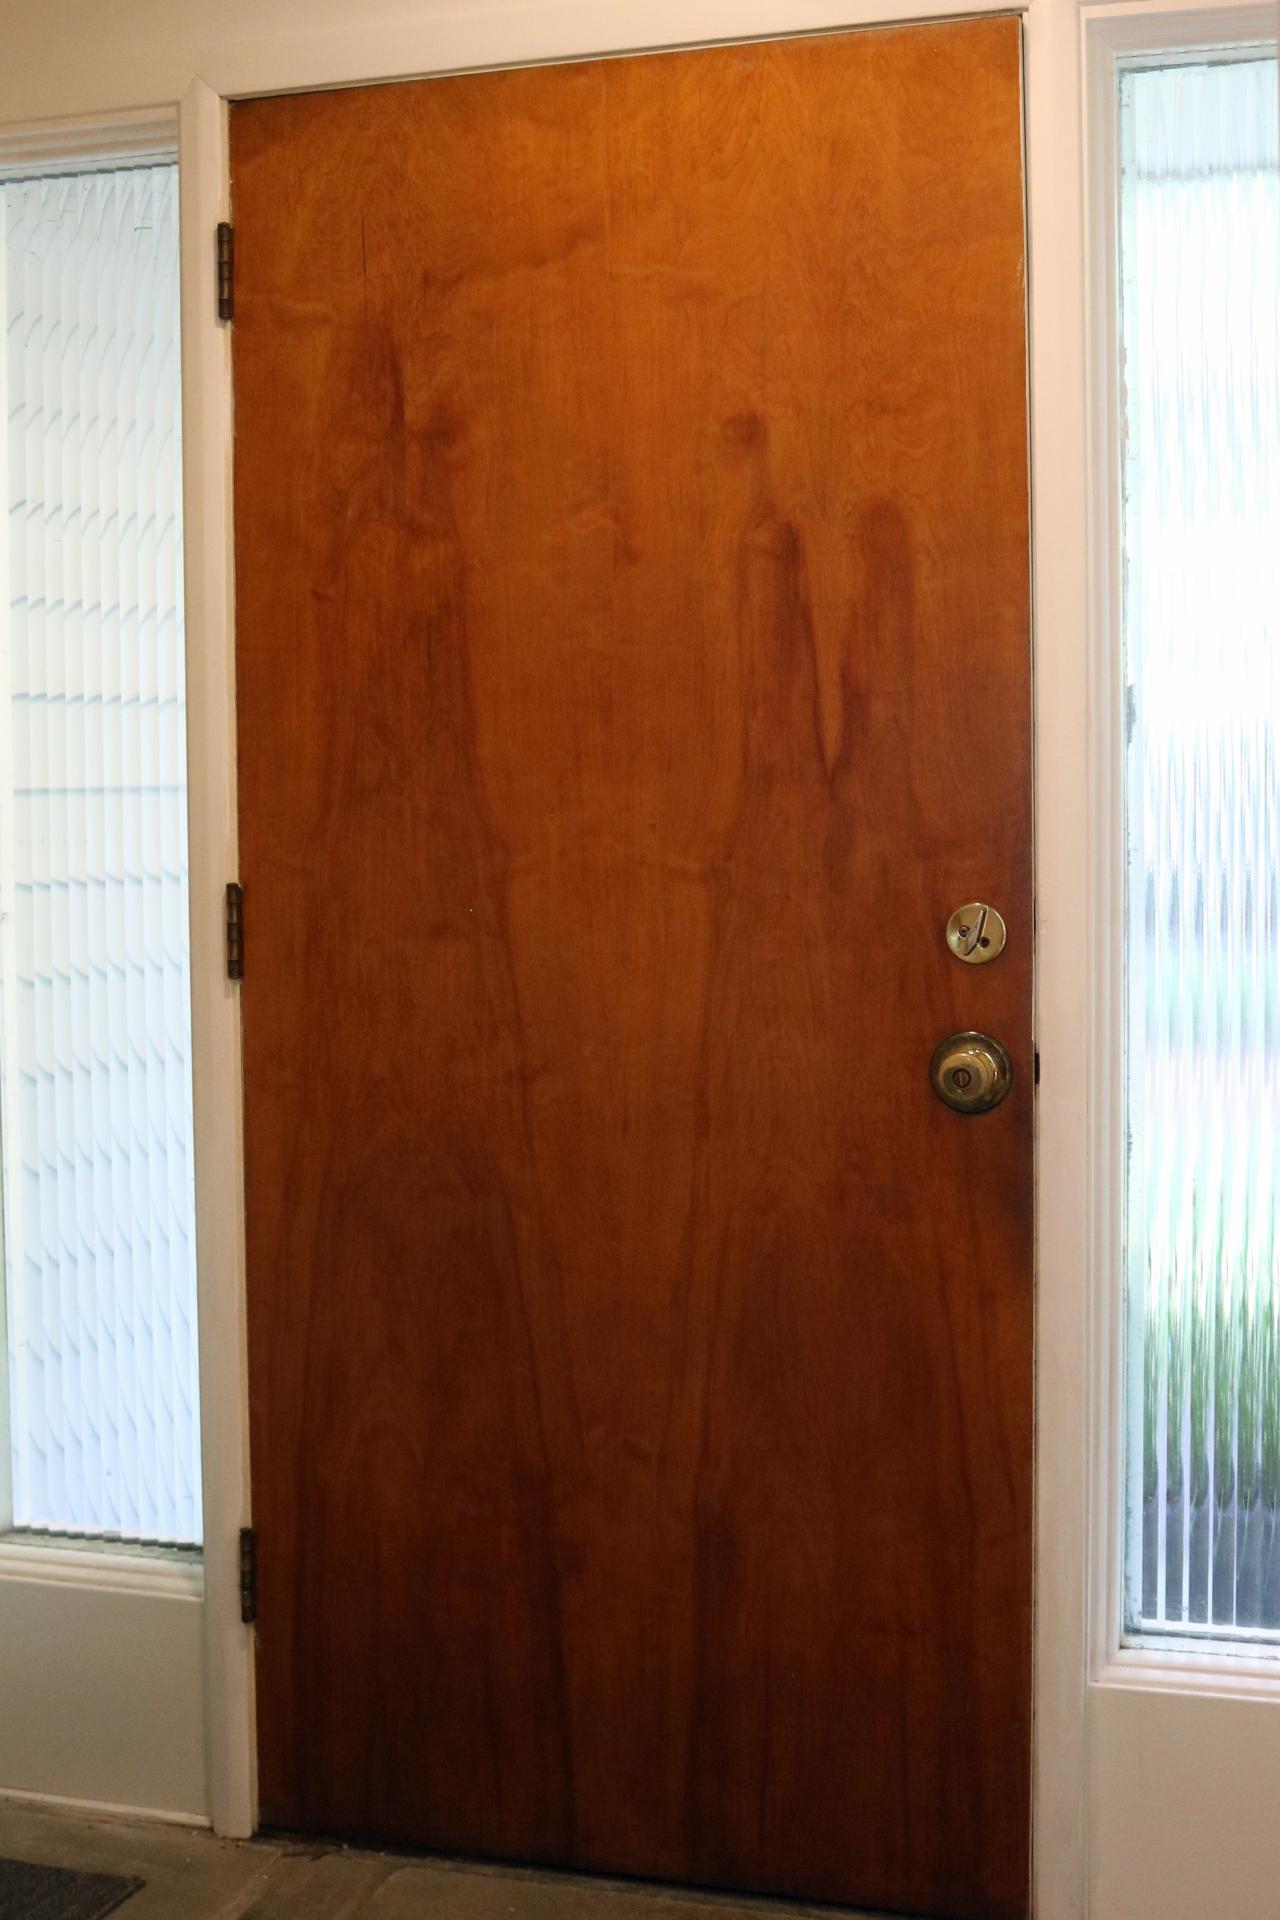 papel pintado en puertas interiores,puerta,propiedad,madera,mancha de madera,habitación